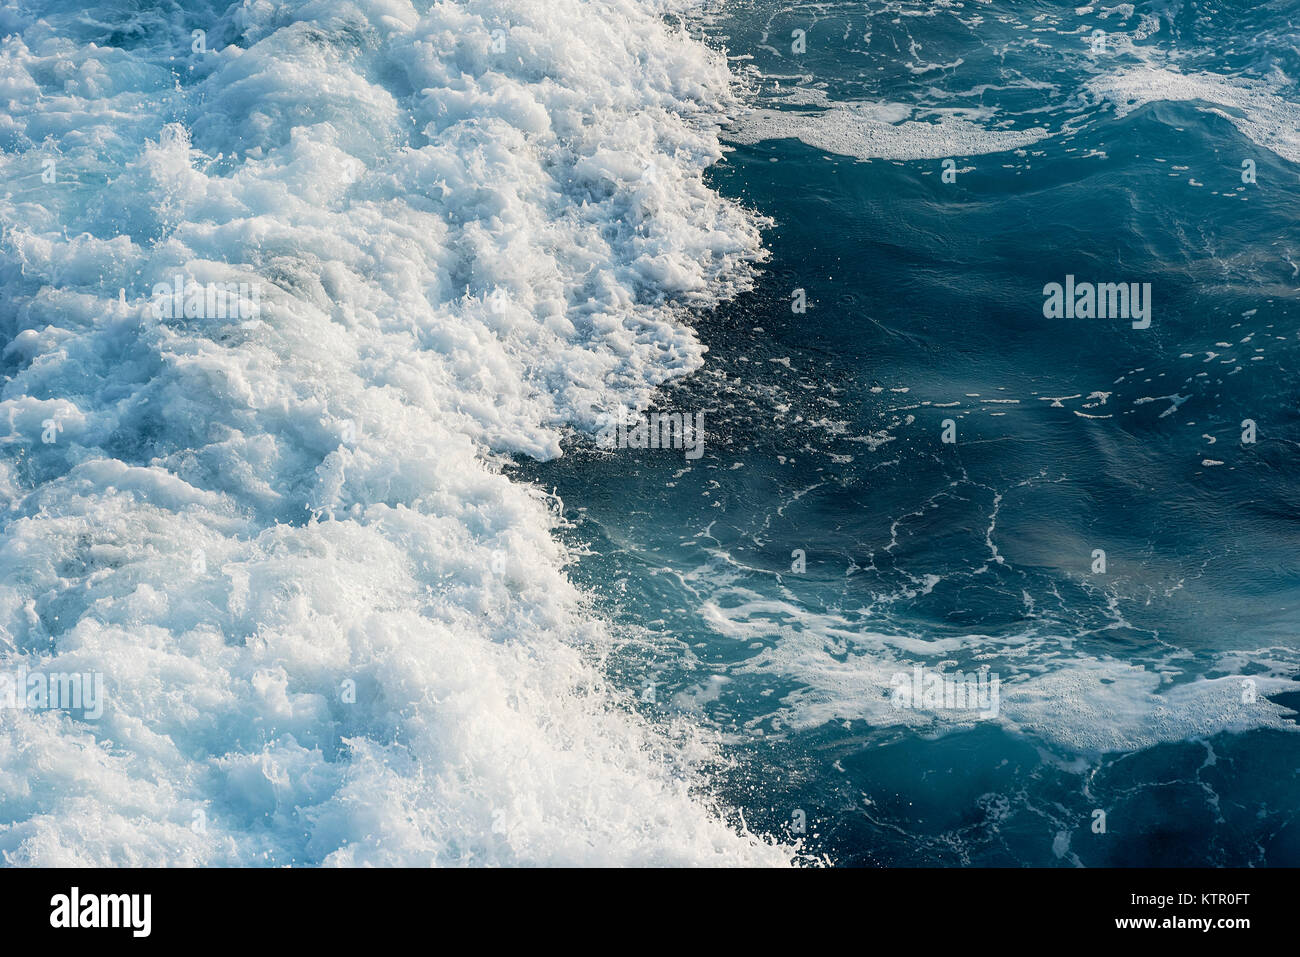 La rottura delle onde oceaniche. Foto Stock